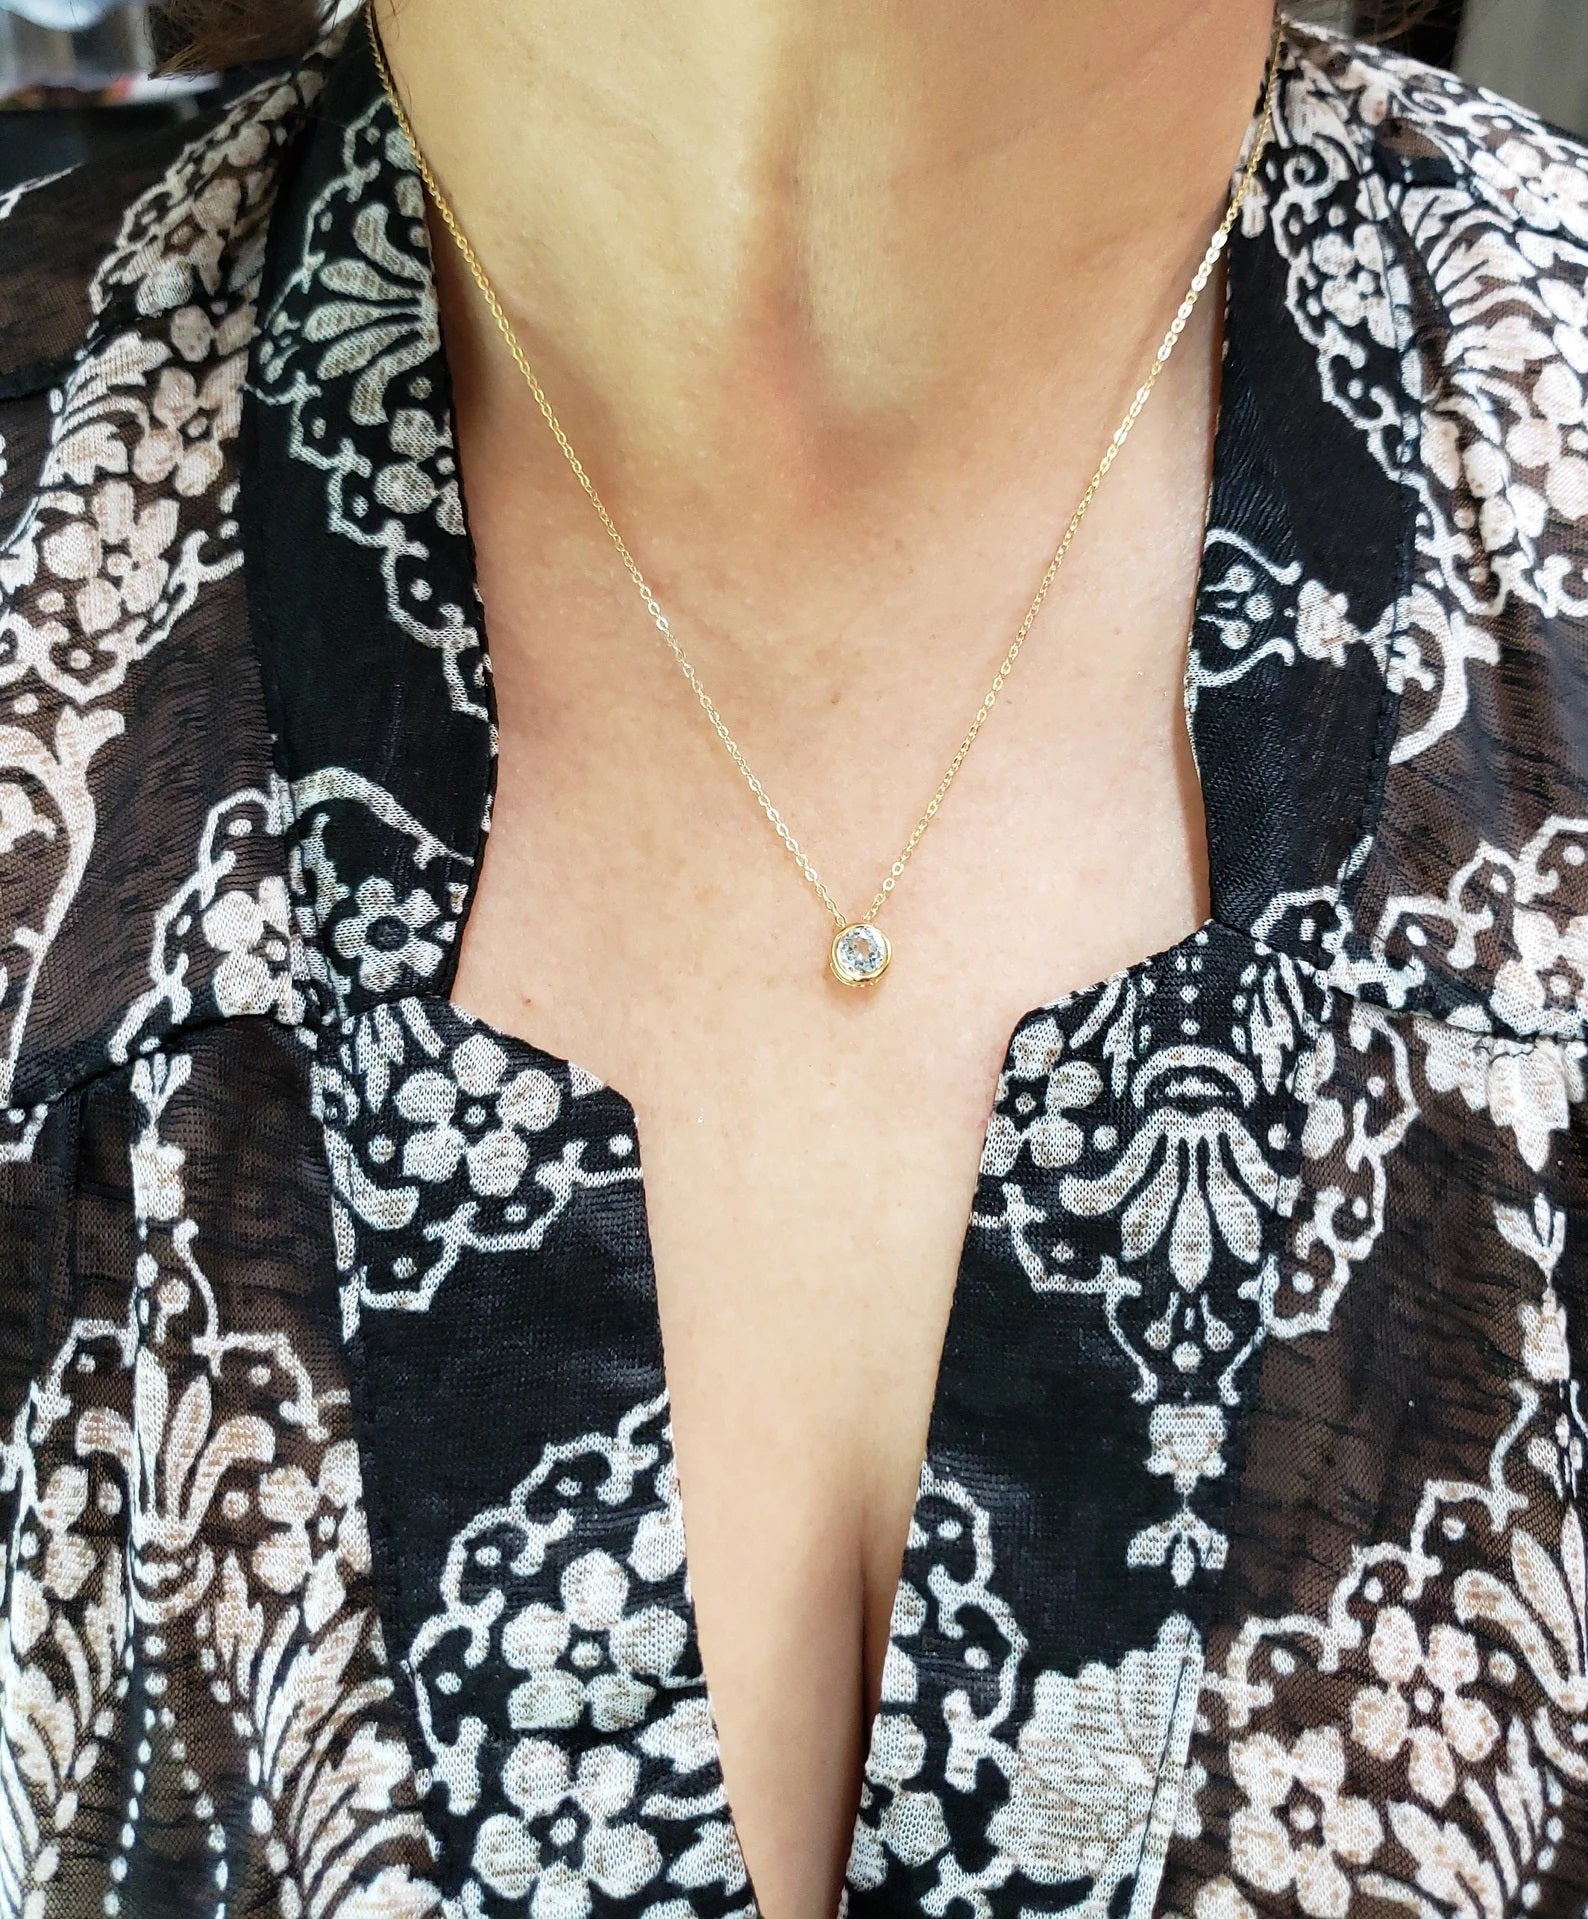 14Kt Gold Genuine Aquamarine Round Bezel Pendant Necklace